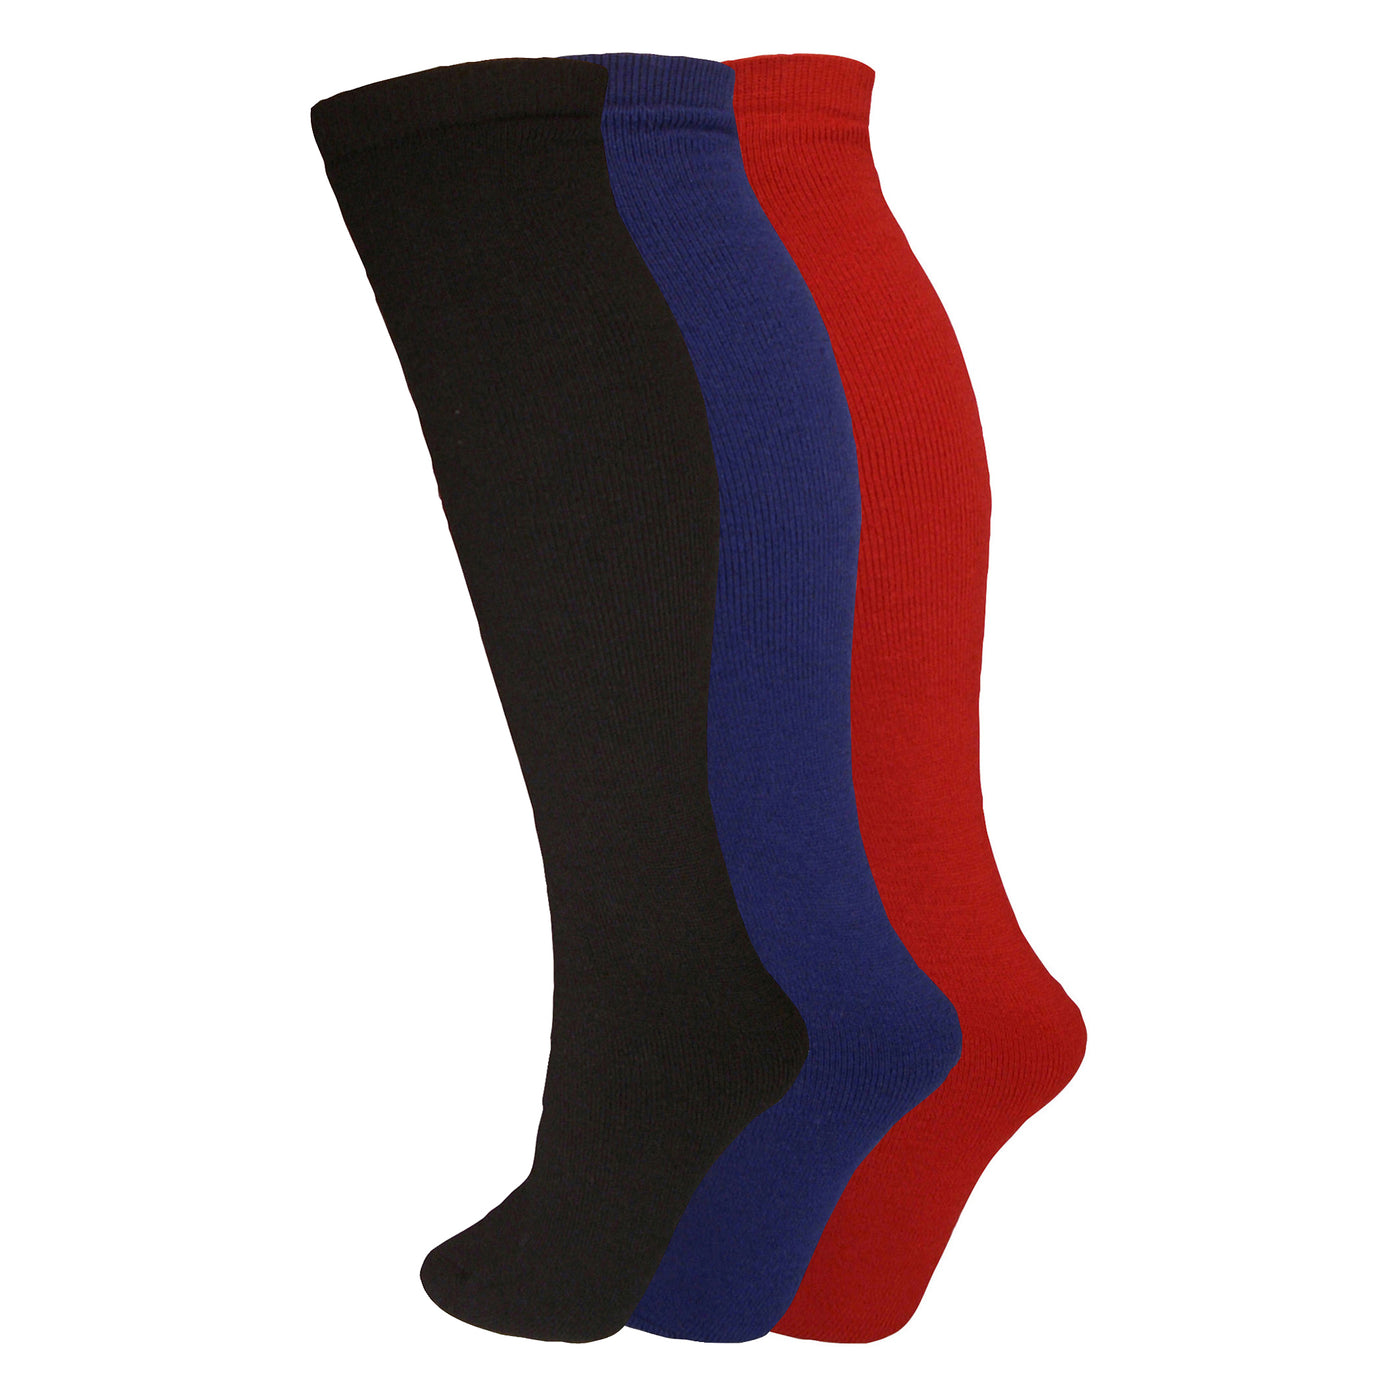 Manbi-PPP Adult Essential Tube Sock Triple Pack Black/Navy/Red